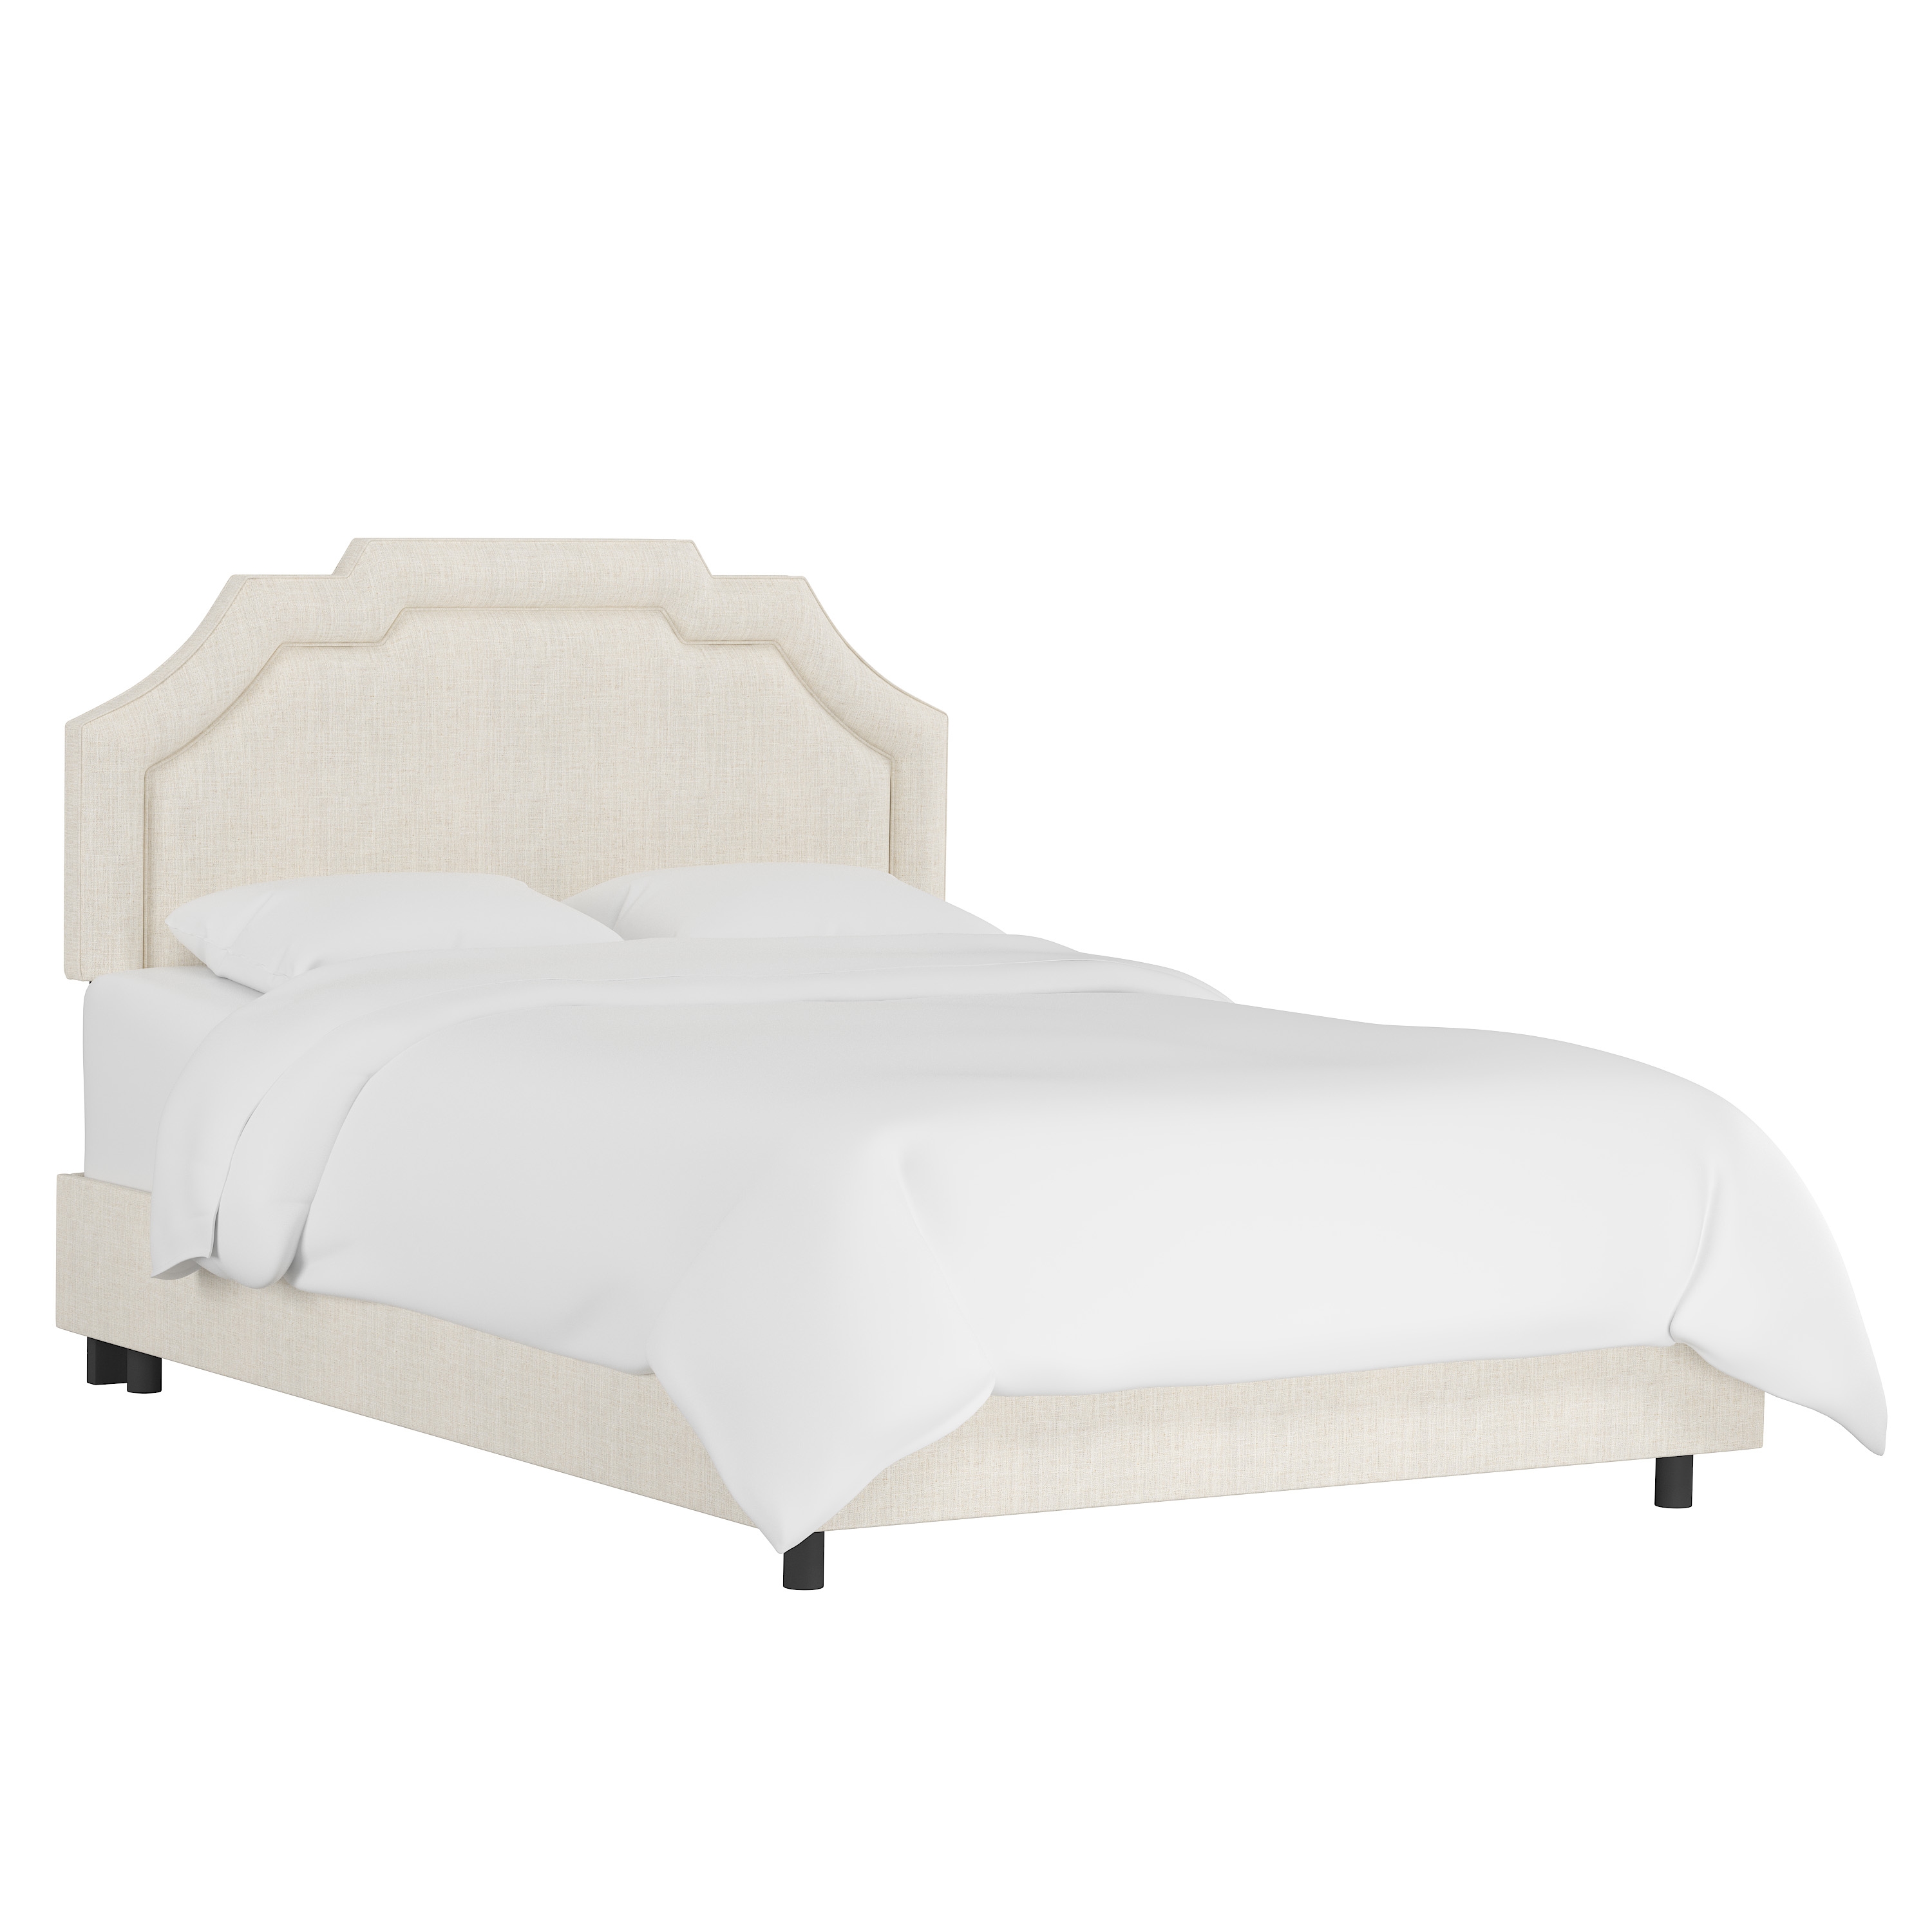 Queen Leona Bed in Linen Talc - Image 0